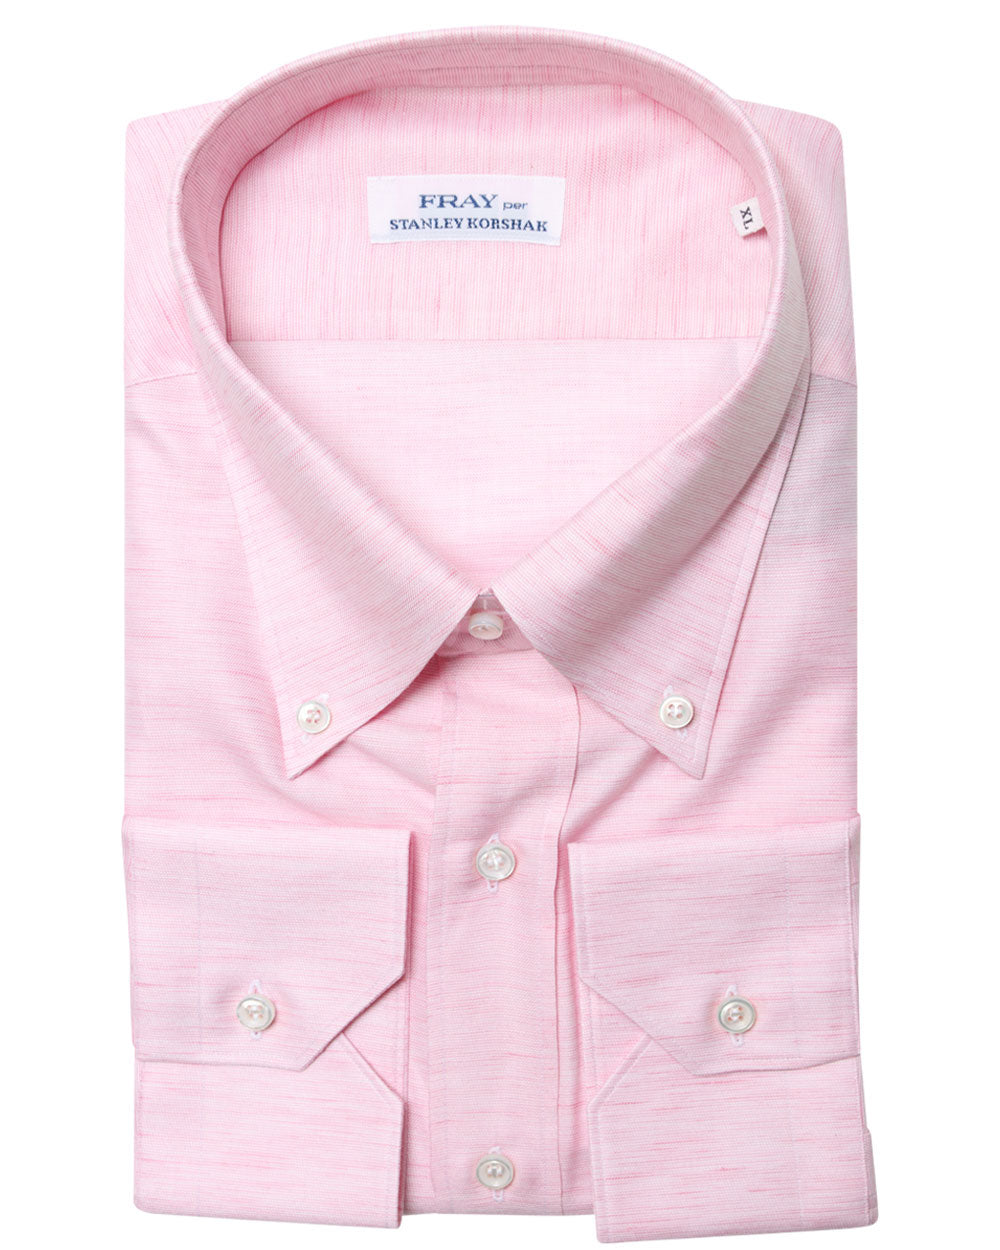 Light Pink Heathered Cotton Blend Dress Shirt